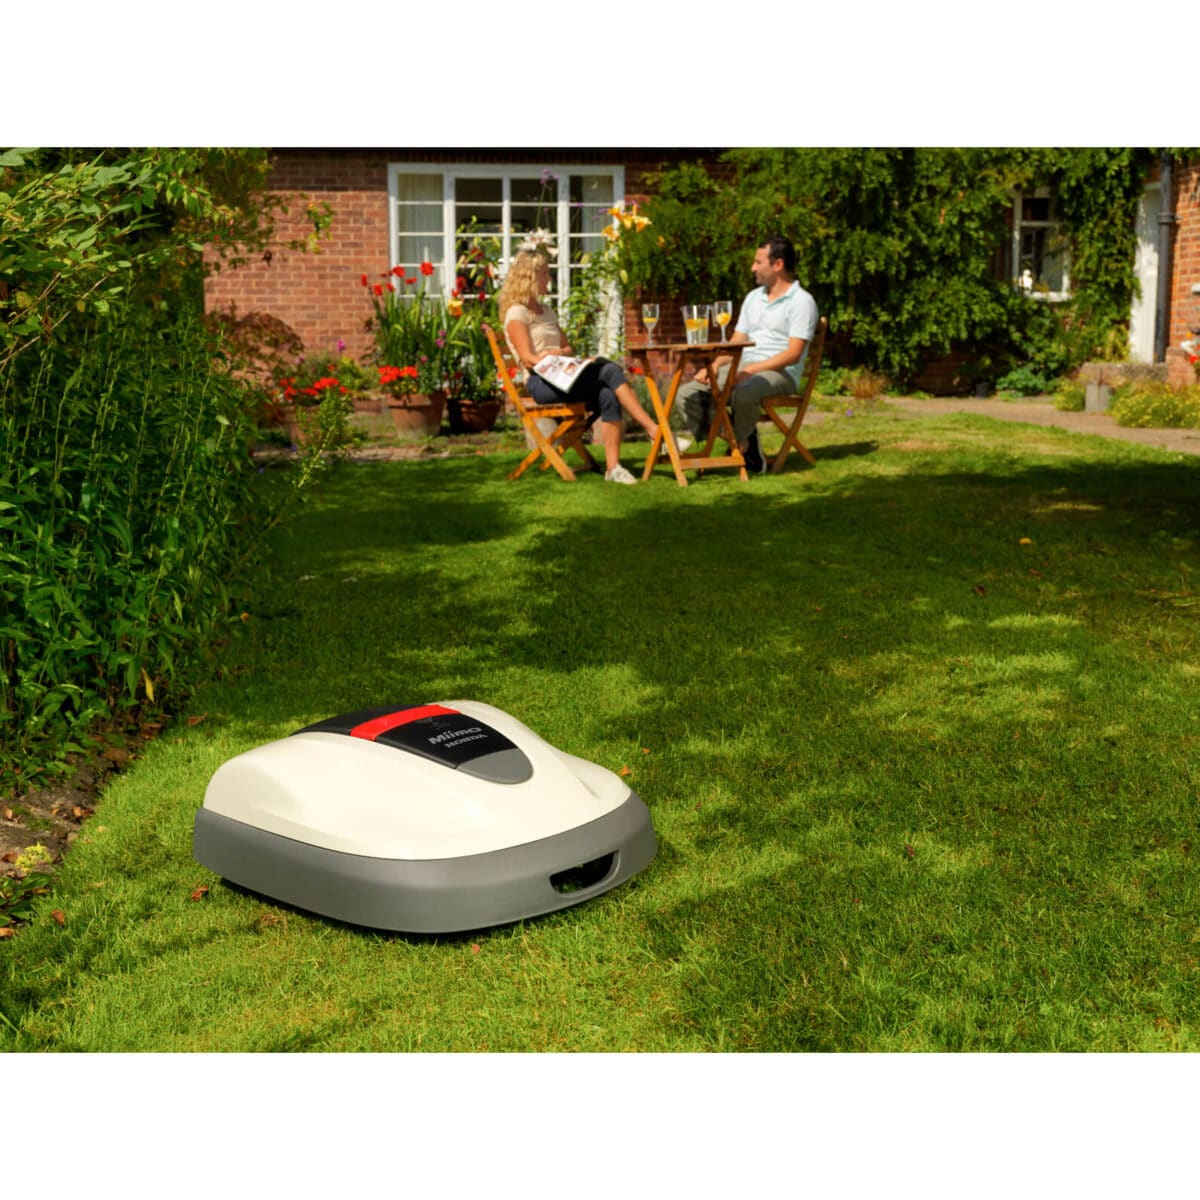 Robot de tonte - Miimo 310 tondeuse HONDA à batterie sans fil pour gazon jardin herbe pelouse